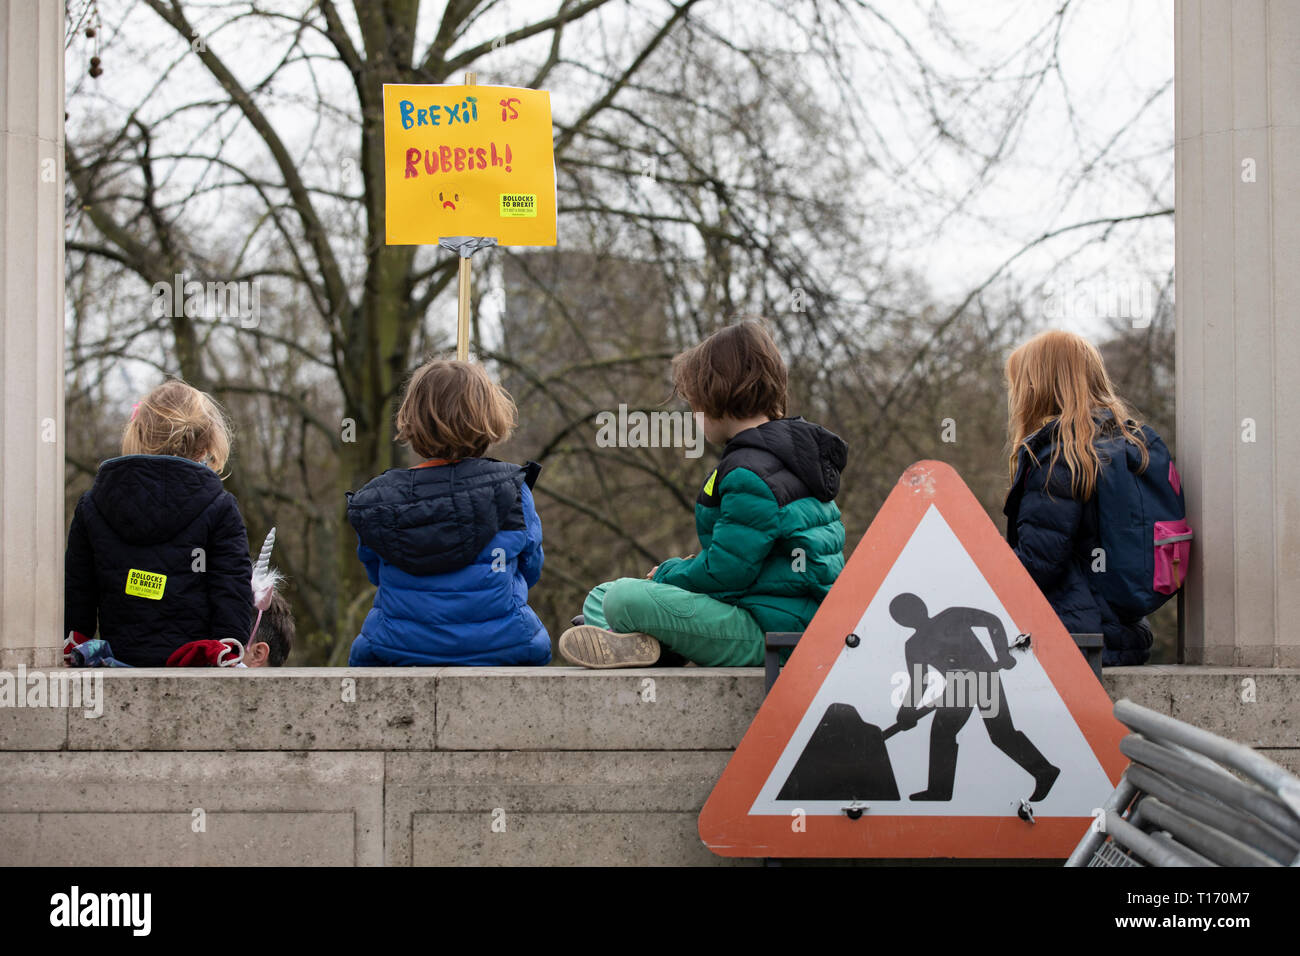 Los niños llevar etiqueta sat en la pared, el voto popular de marzo, Londres, Inglaterra Foto de stock